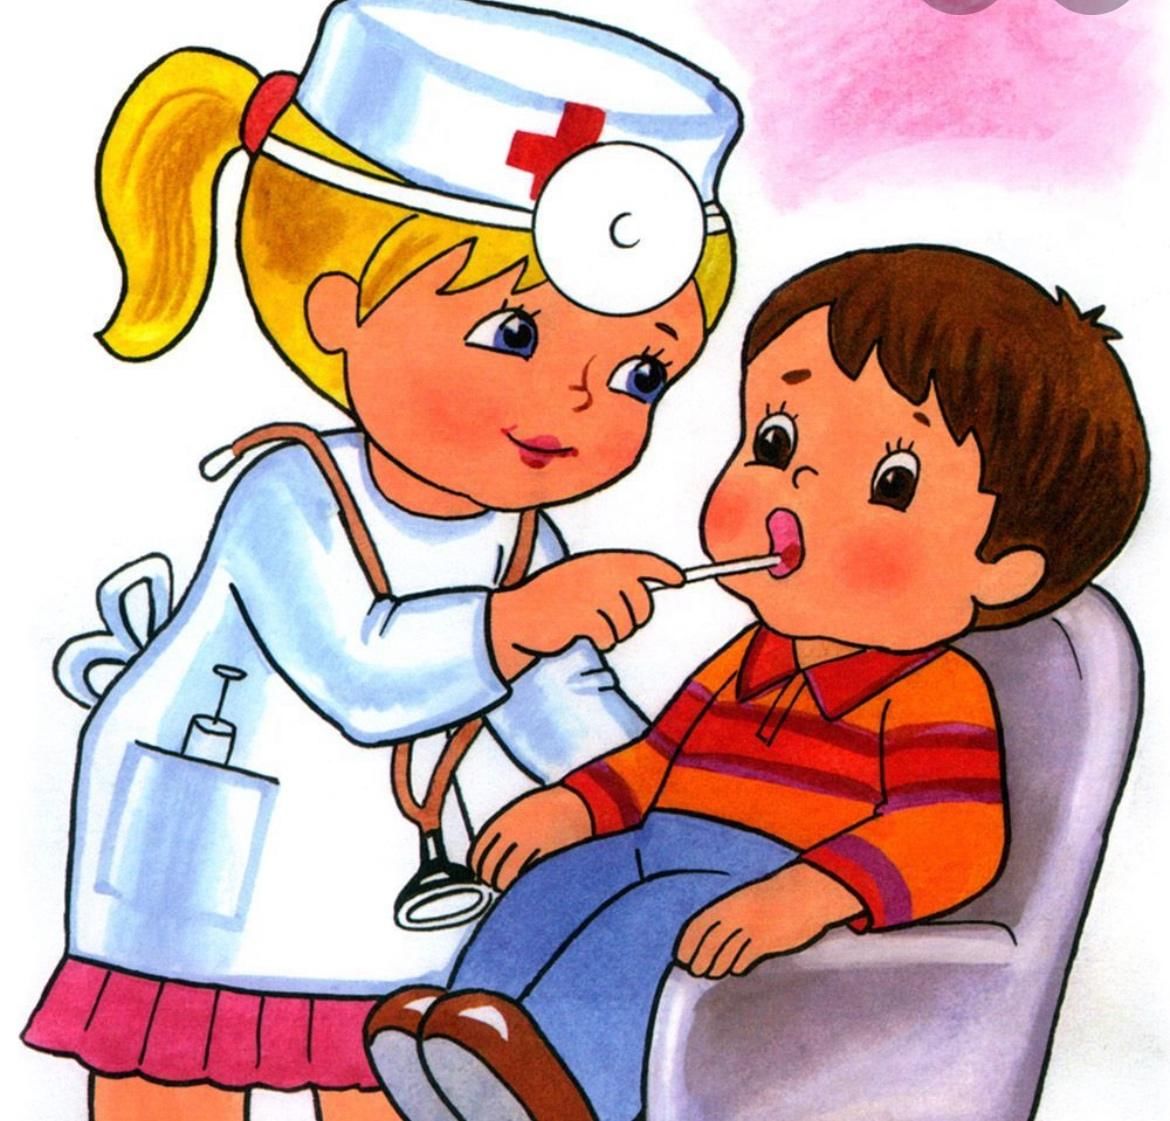 Иллюстрации больница для детей